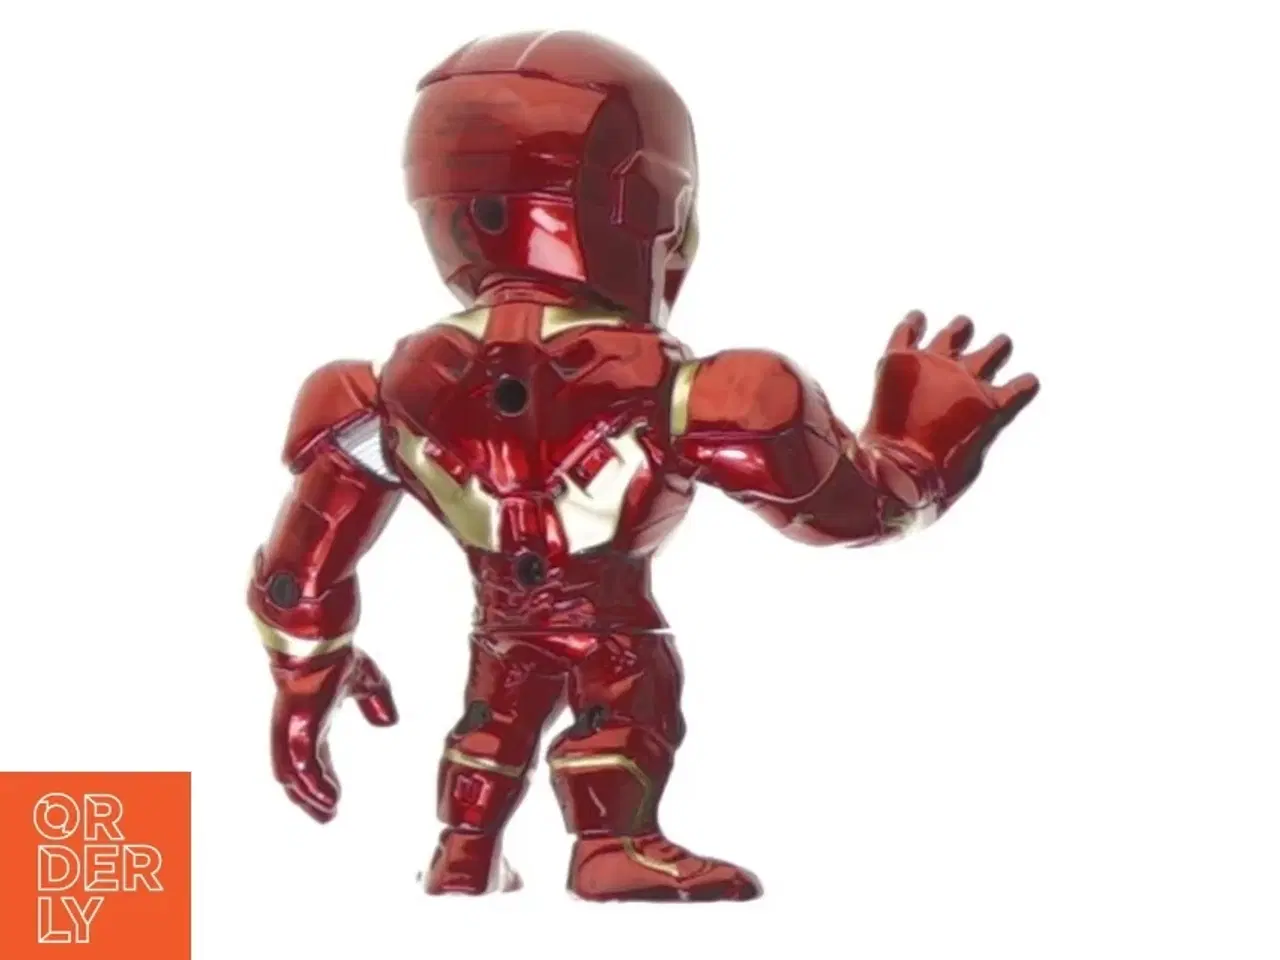 Billede 2 - Iron man figur fra Marvel (str. 10 x 8 cm)